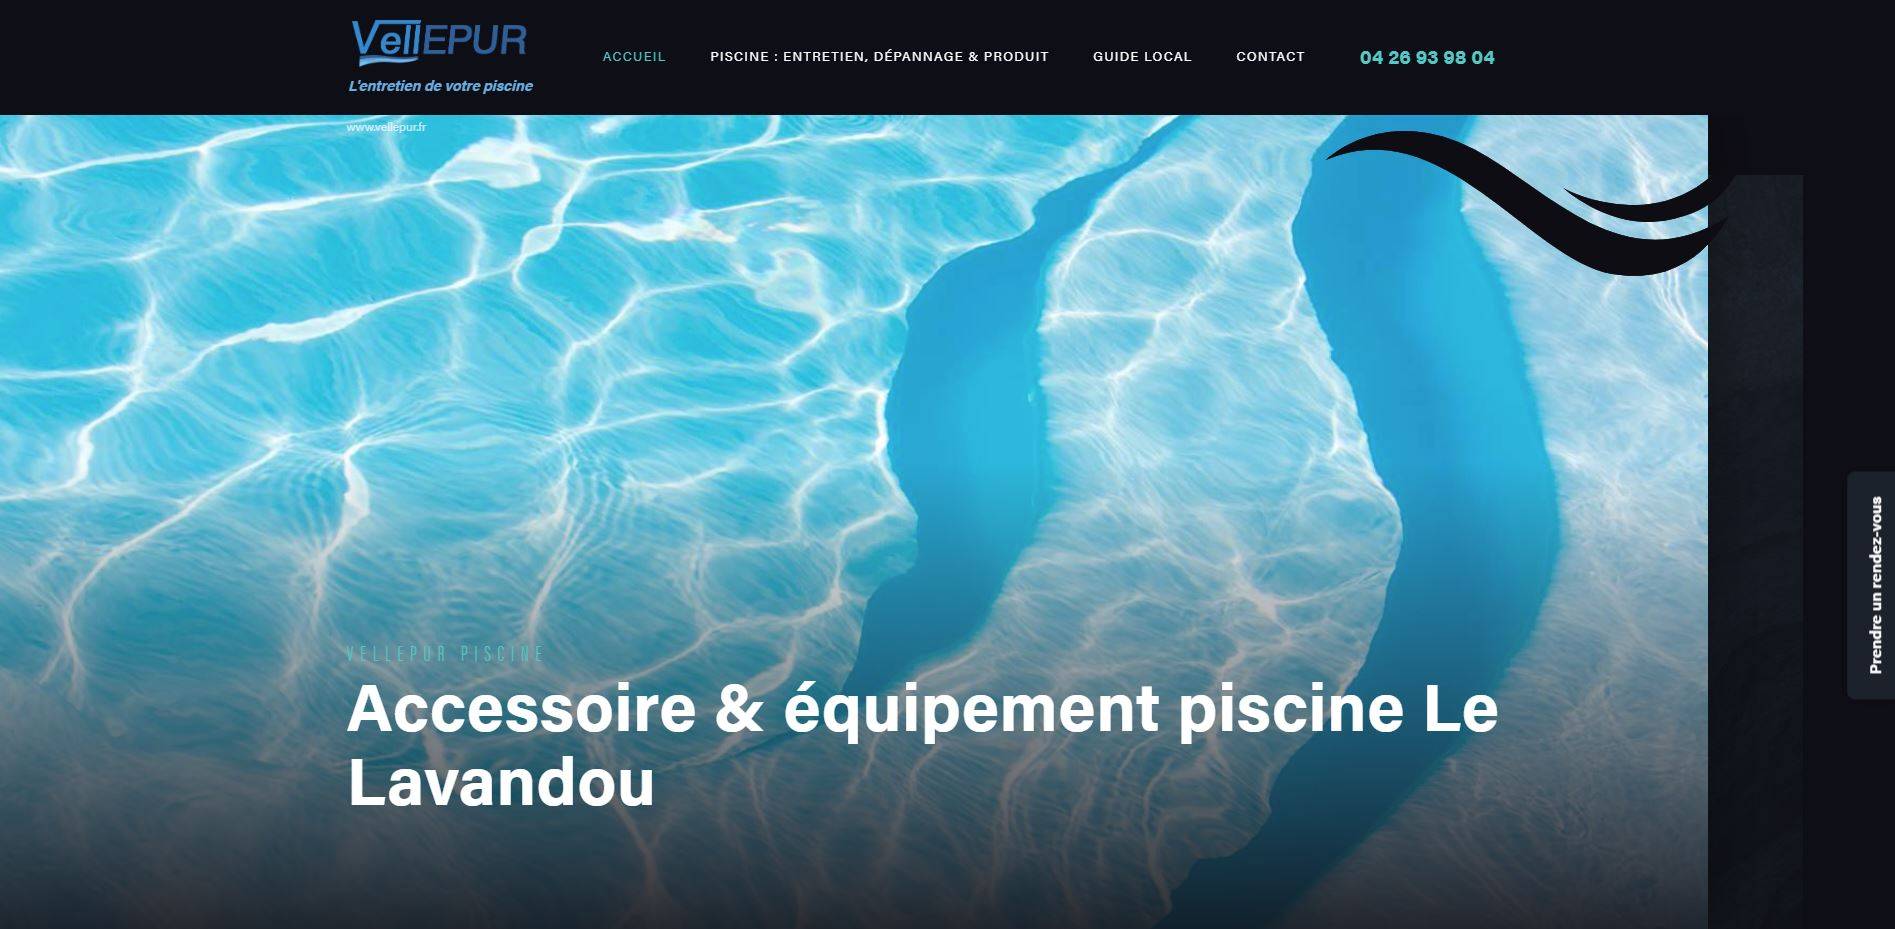 Où acheter des accessoires et produits pour entretien de piscine sur Le Lavandou ? - VELLEPUR